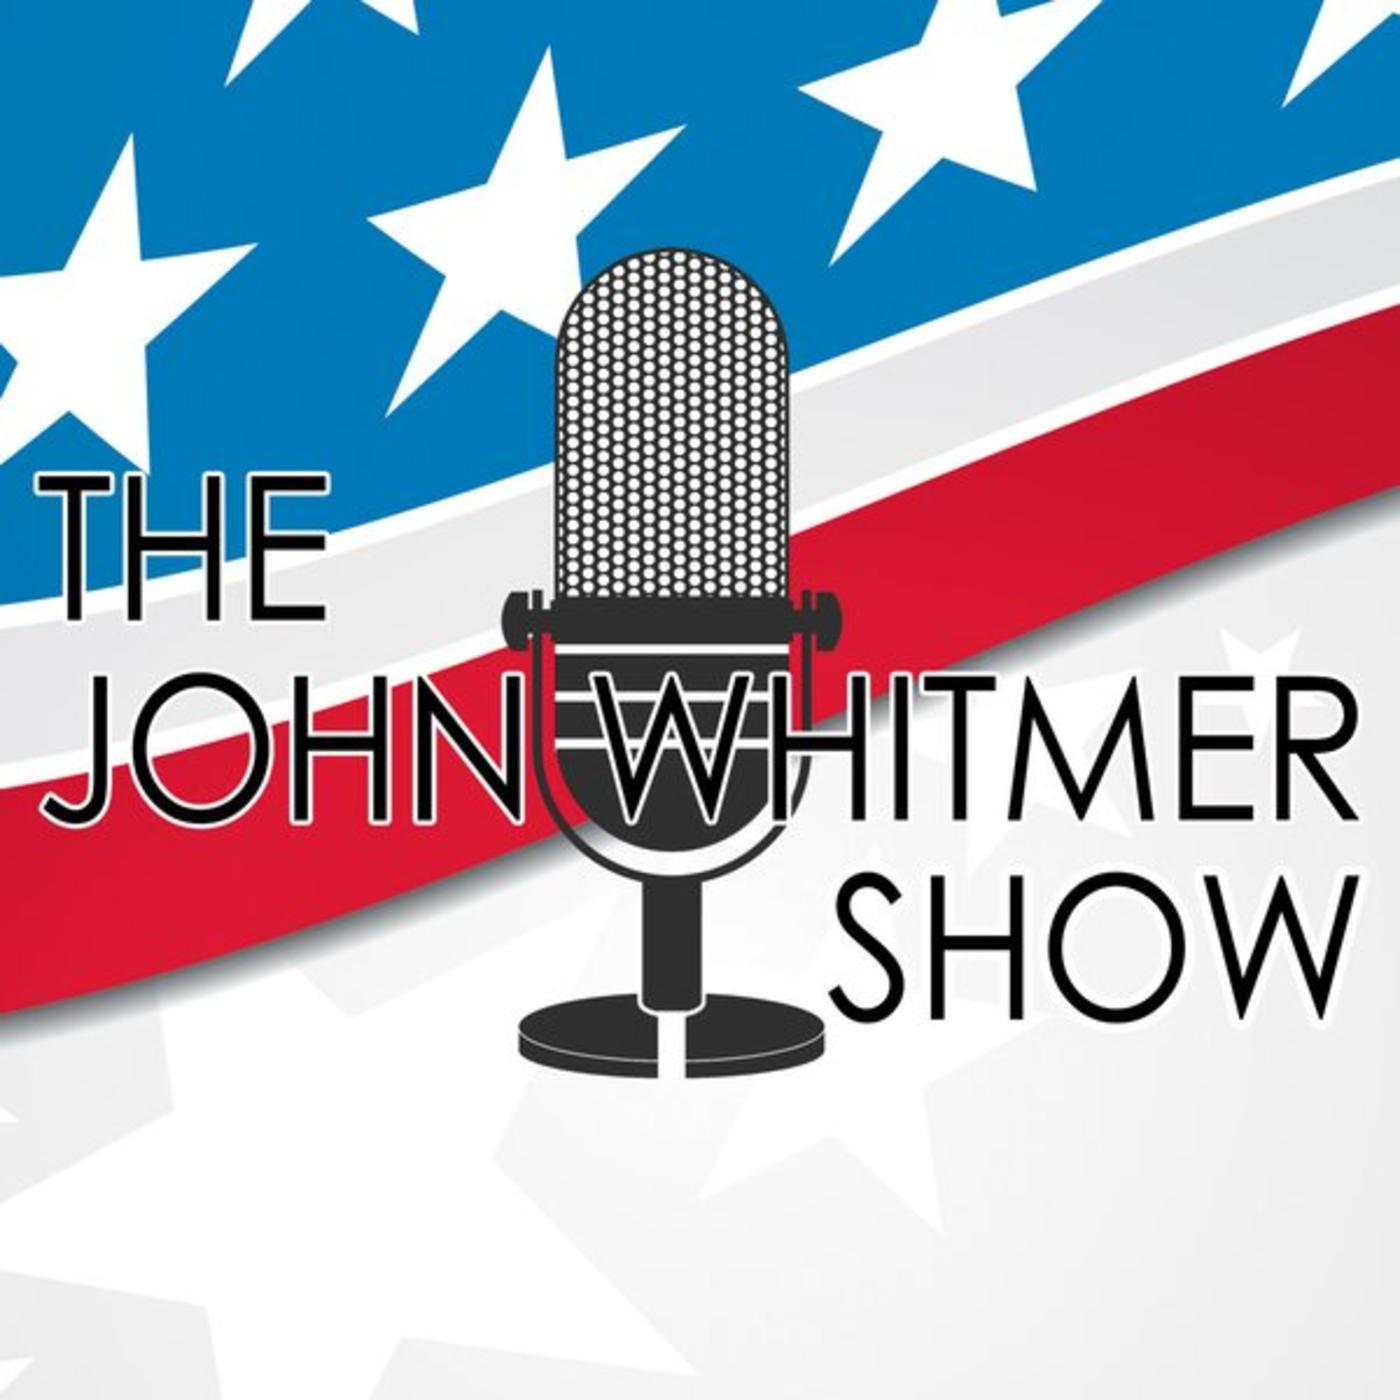 John Whitmer Show - Commissioner Ryan Baty fills in as host